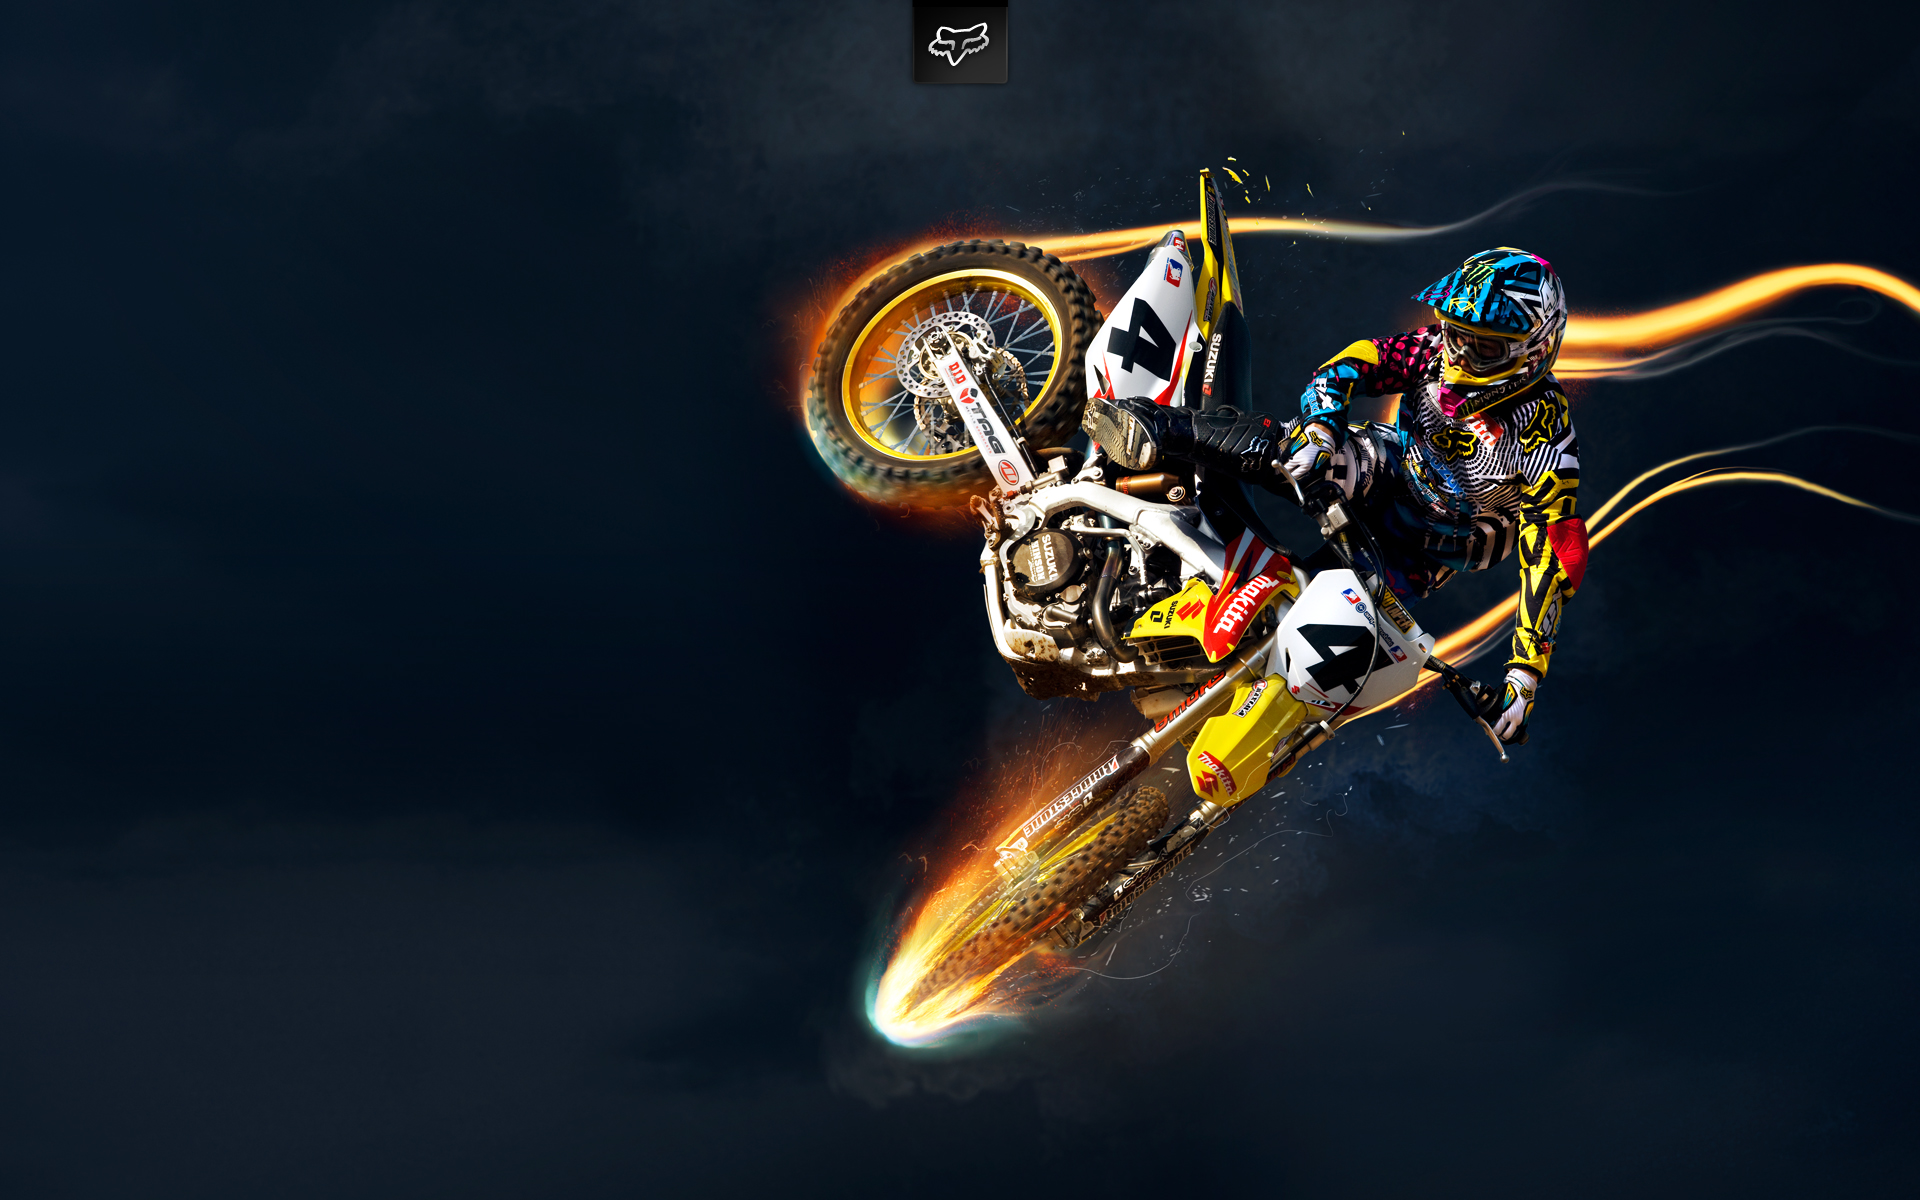 47+] Motocross Screensavers Wallpapers - WallpaperSafari